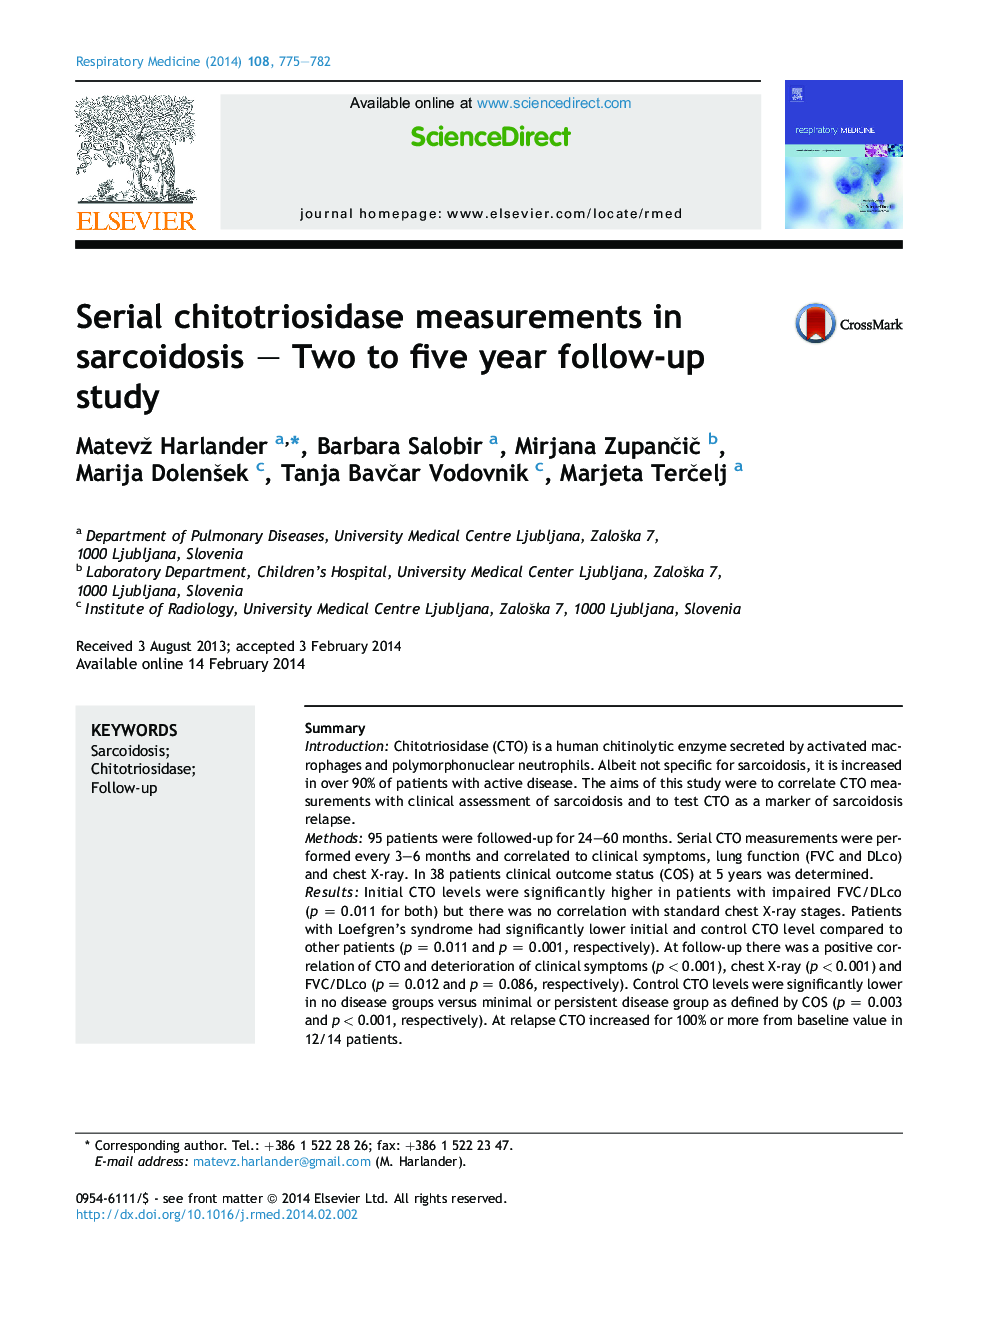 اندازه گیری های کیتوتریوزیداز سریال در سارکوئیدوز - دو تا پنج ساله پس آزمون 